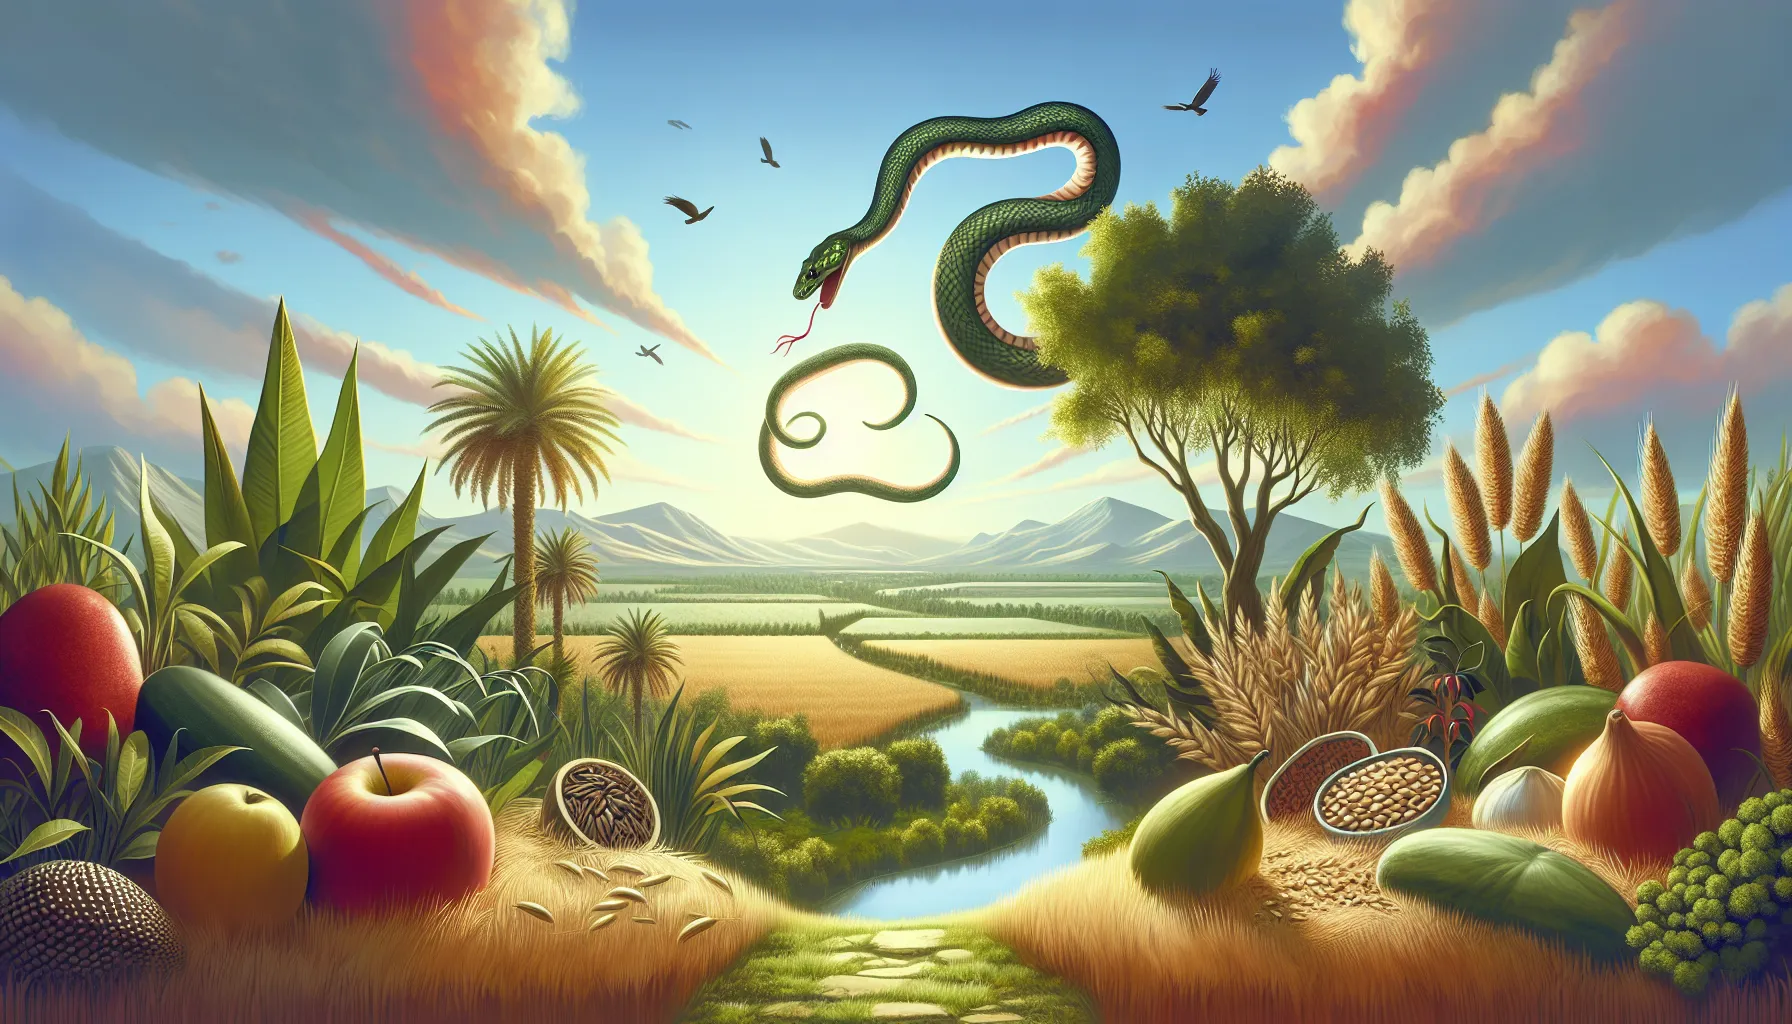 Imagen ilustrativa representando la simiente de la serpiente y su significado en la cultura popular y religiosa.